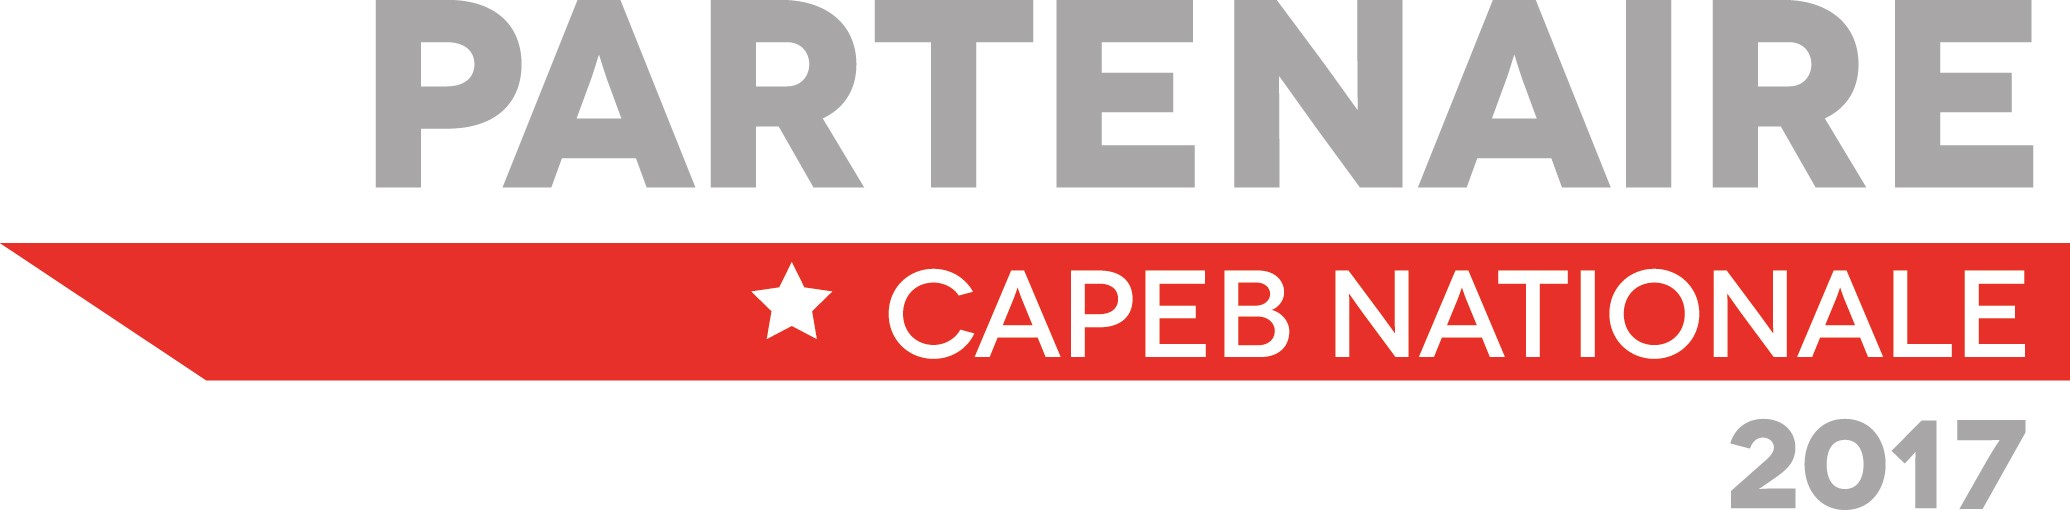 Partenaire CAPEB